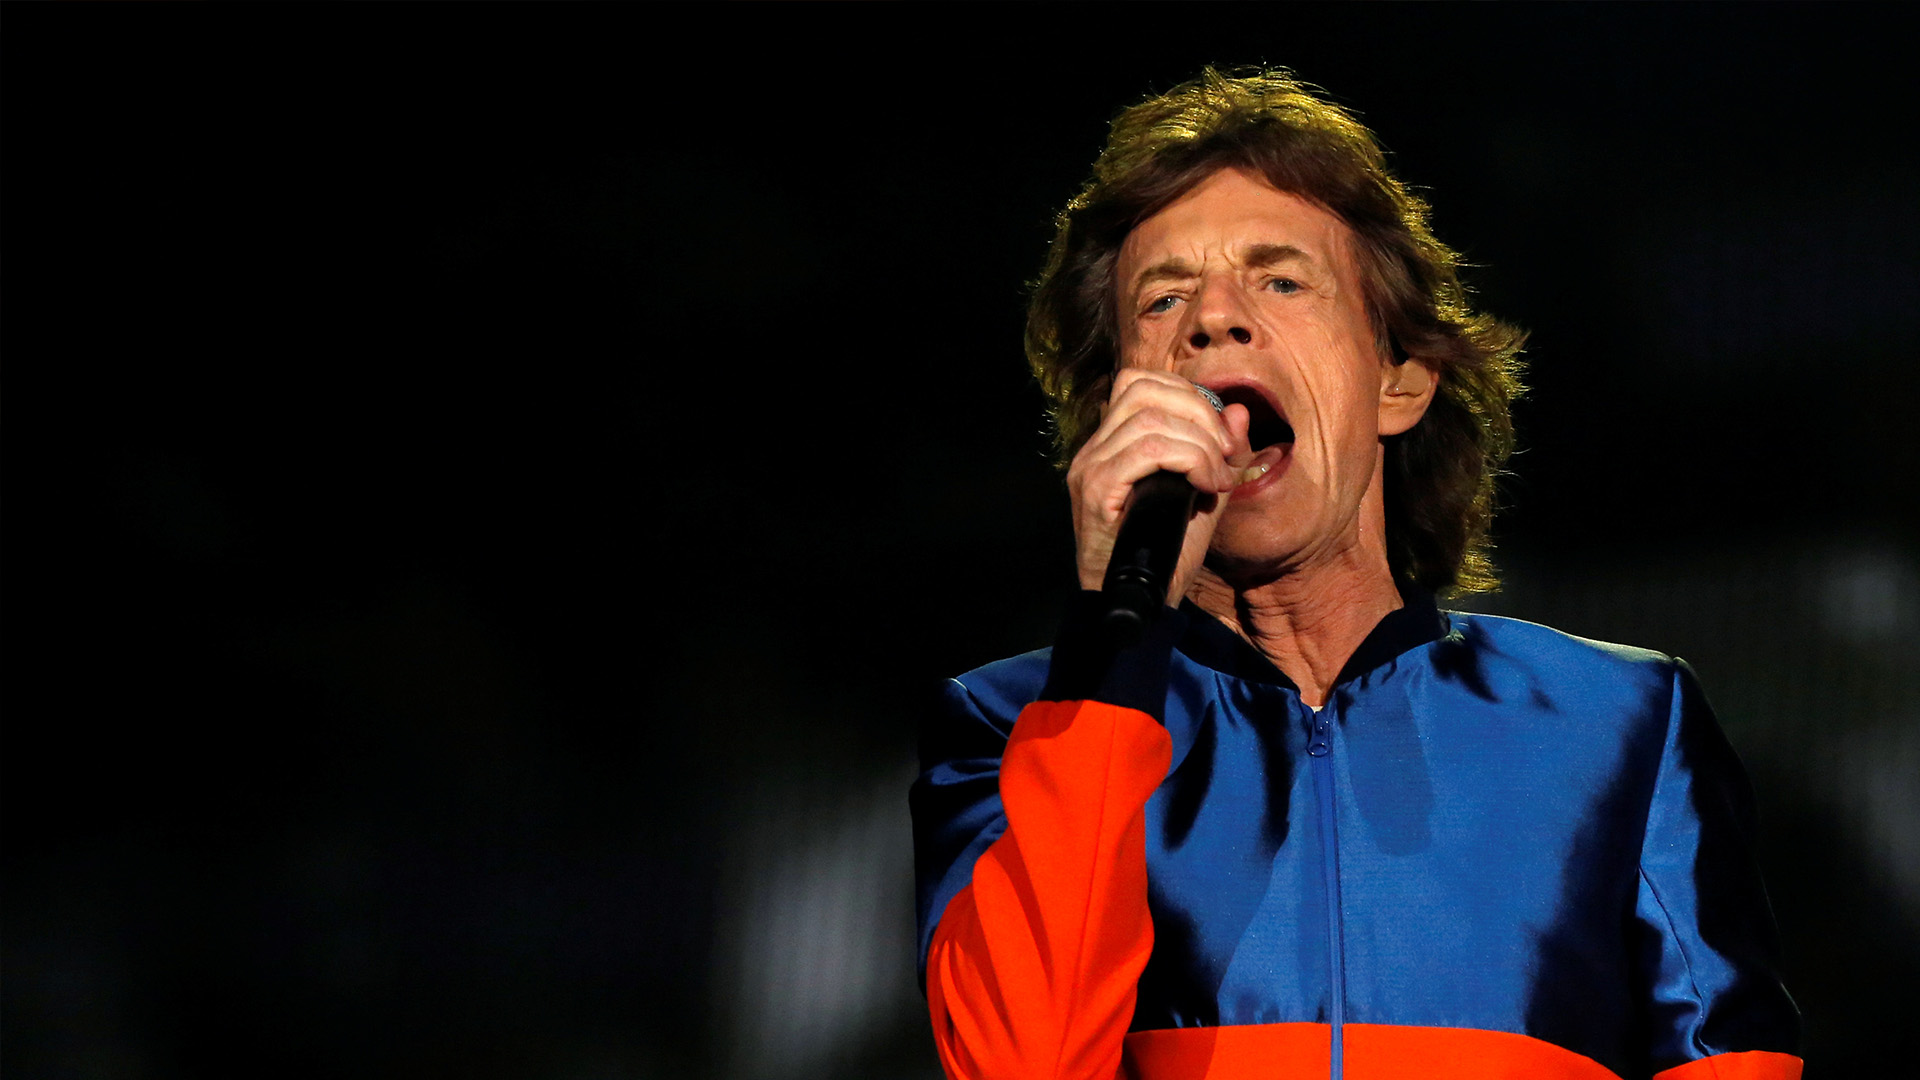 Mick Jagger lanza dos canciones en solitario inspiradas en Trump y el Brexit